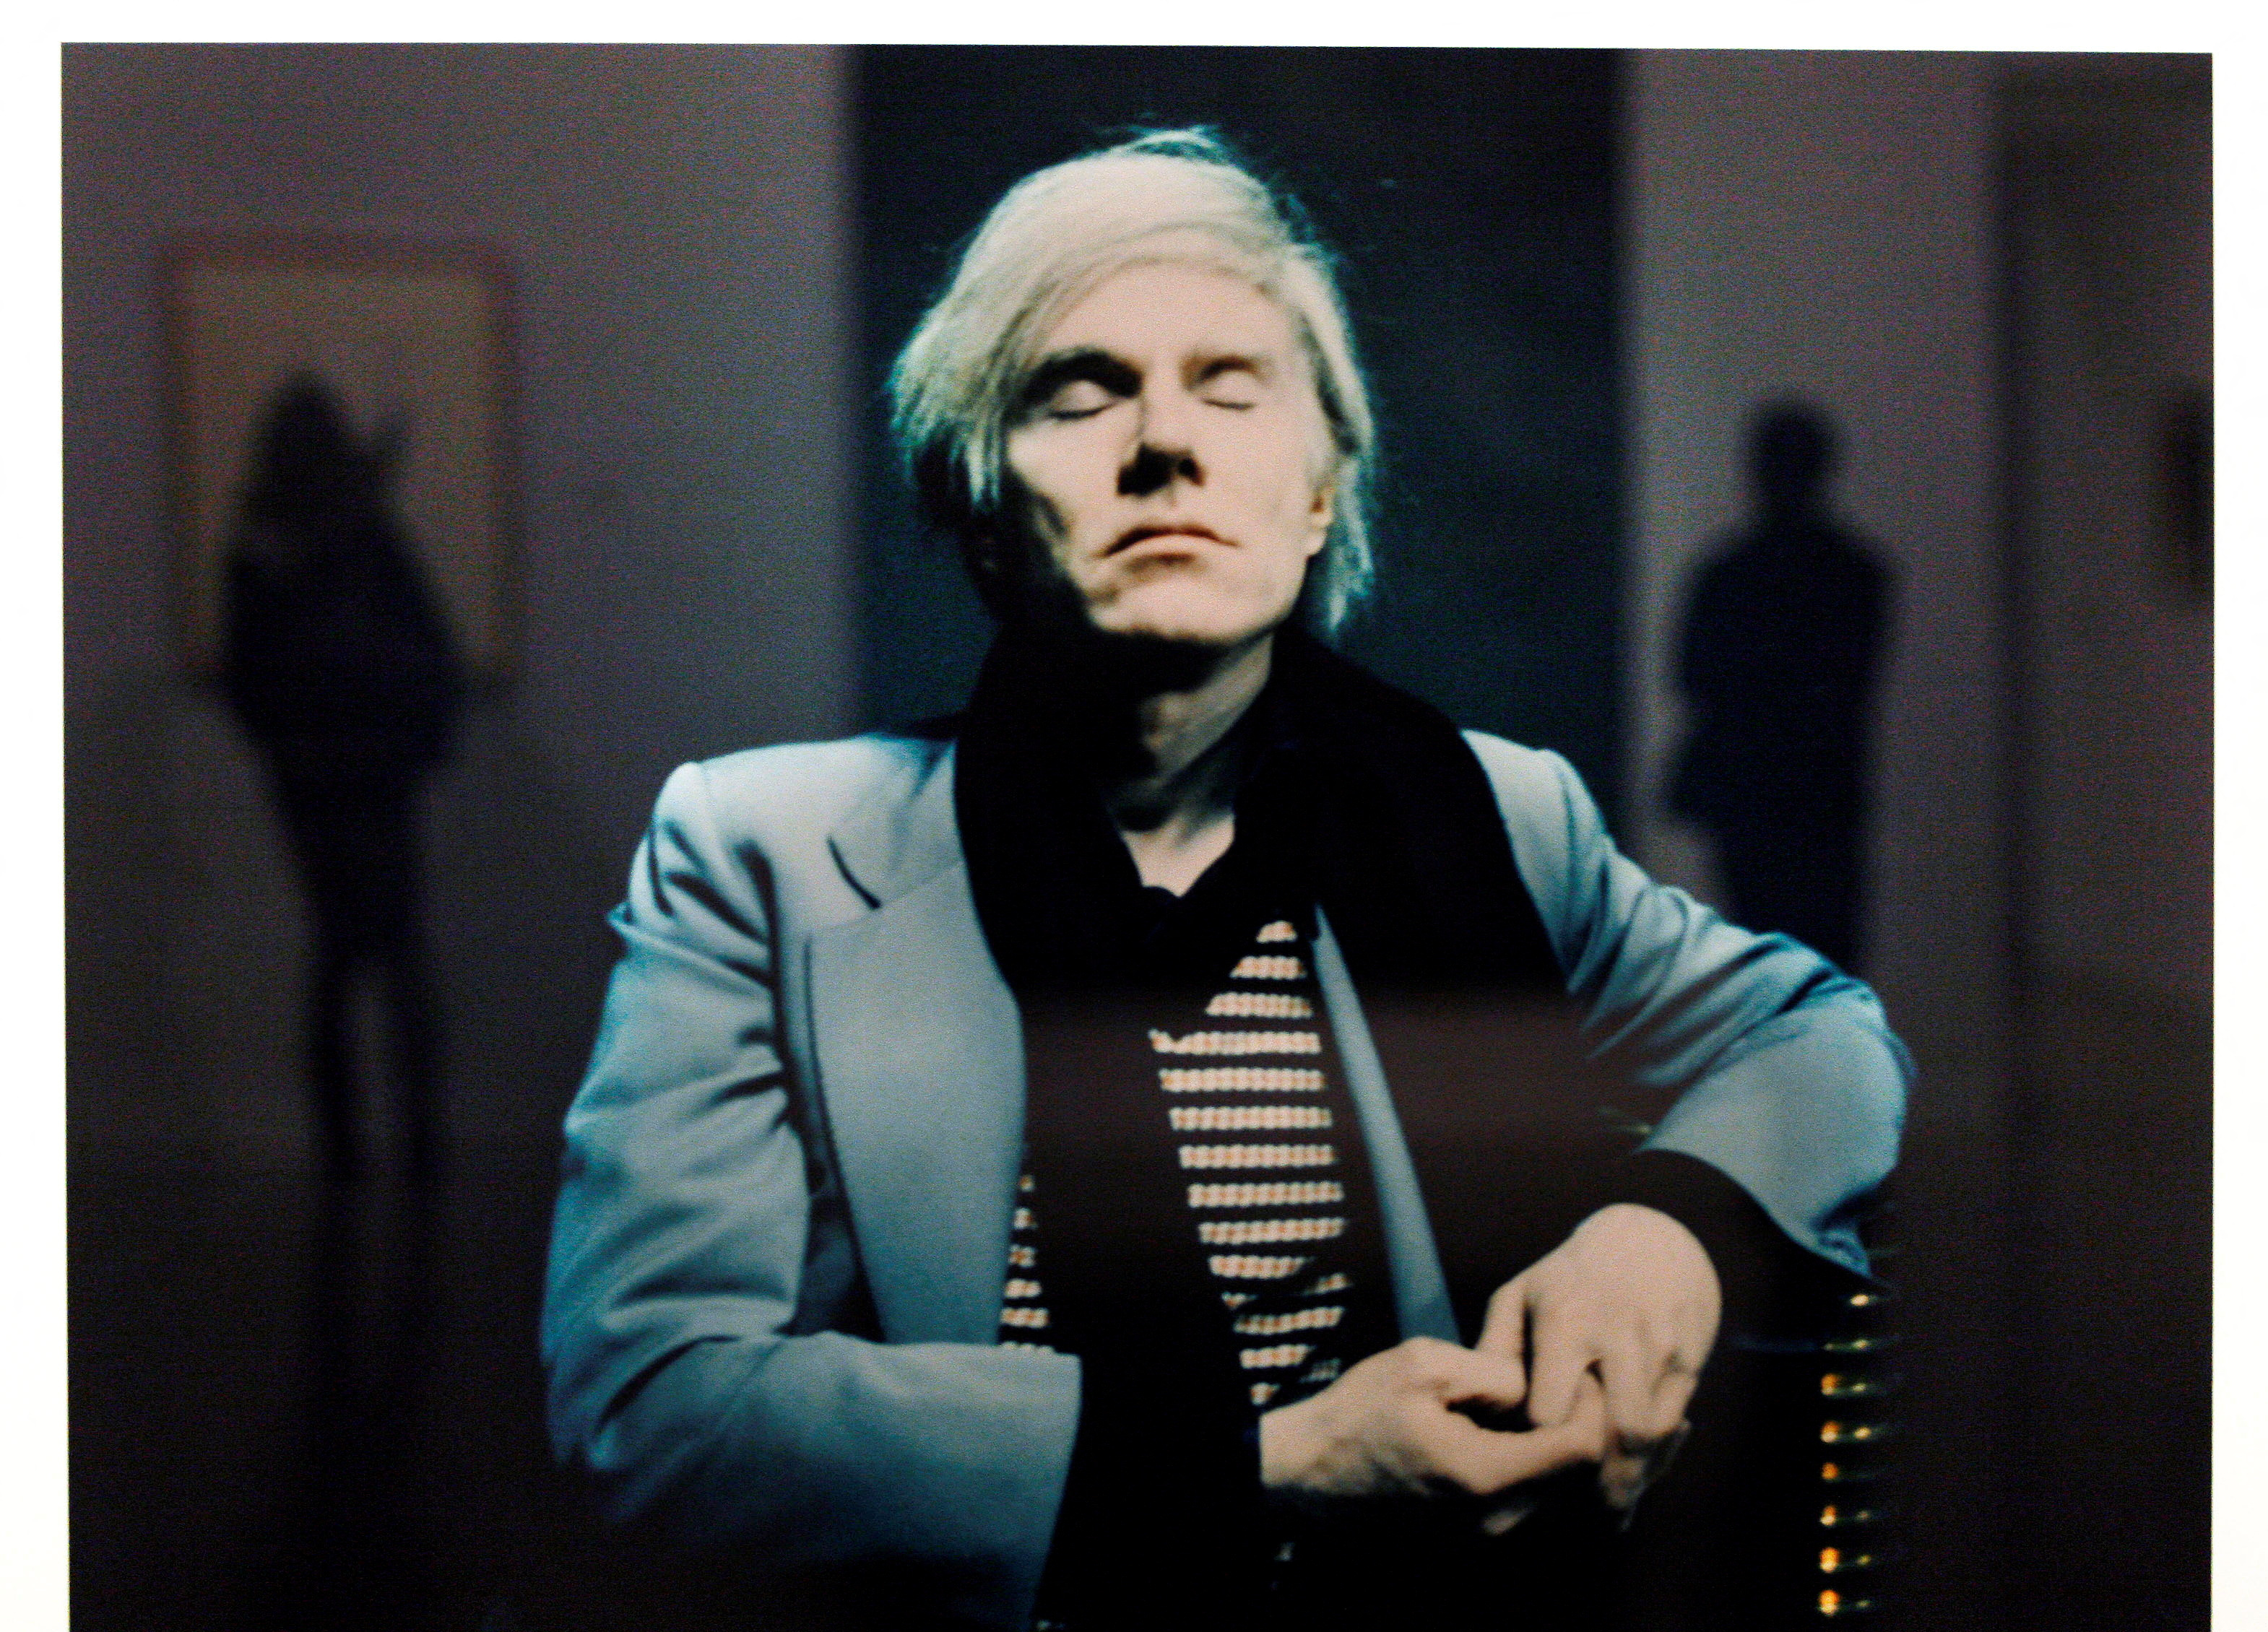 Retrato de Andy Warhol por Timm Rautert, parte de la exhibición  "Warhol on Warhol" en el centro cultural Casa Encendida de Madrid, noviembre de 2007 (Foto: REUTERS/Susana Vera)